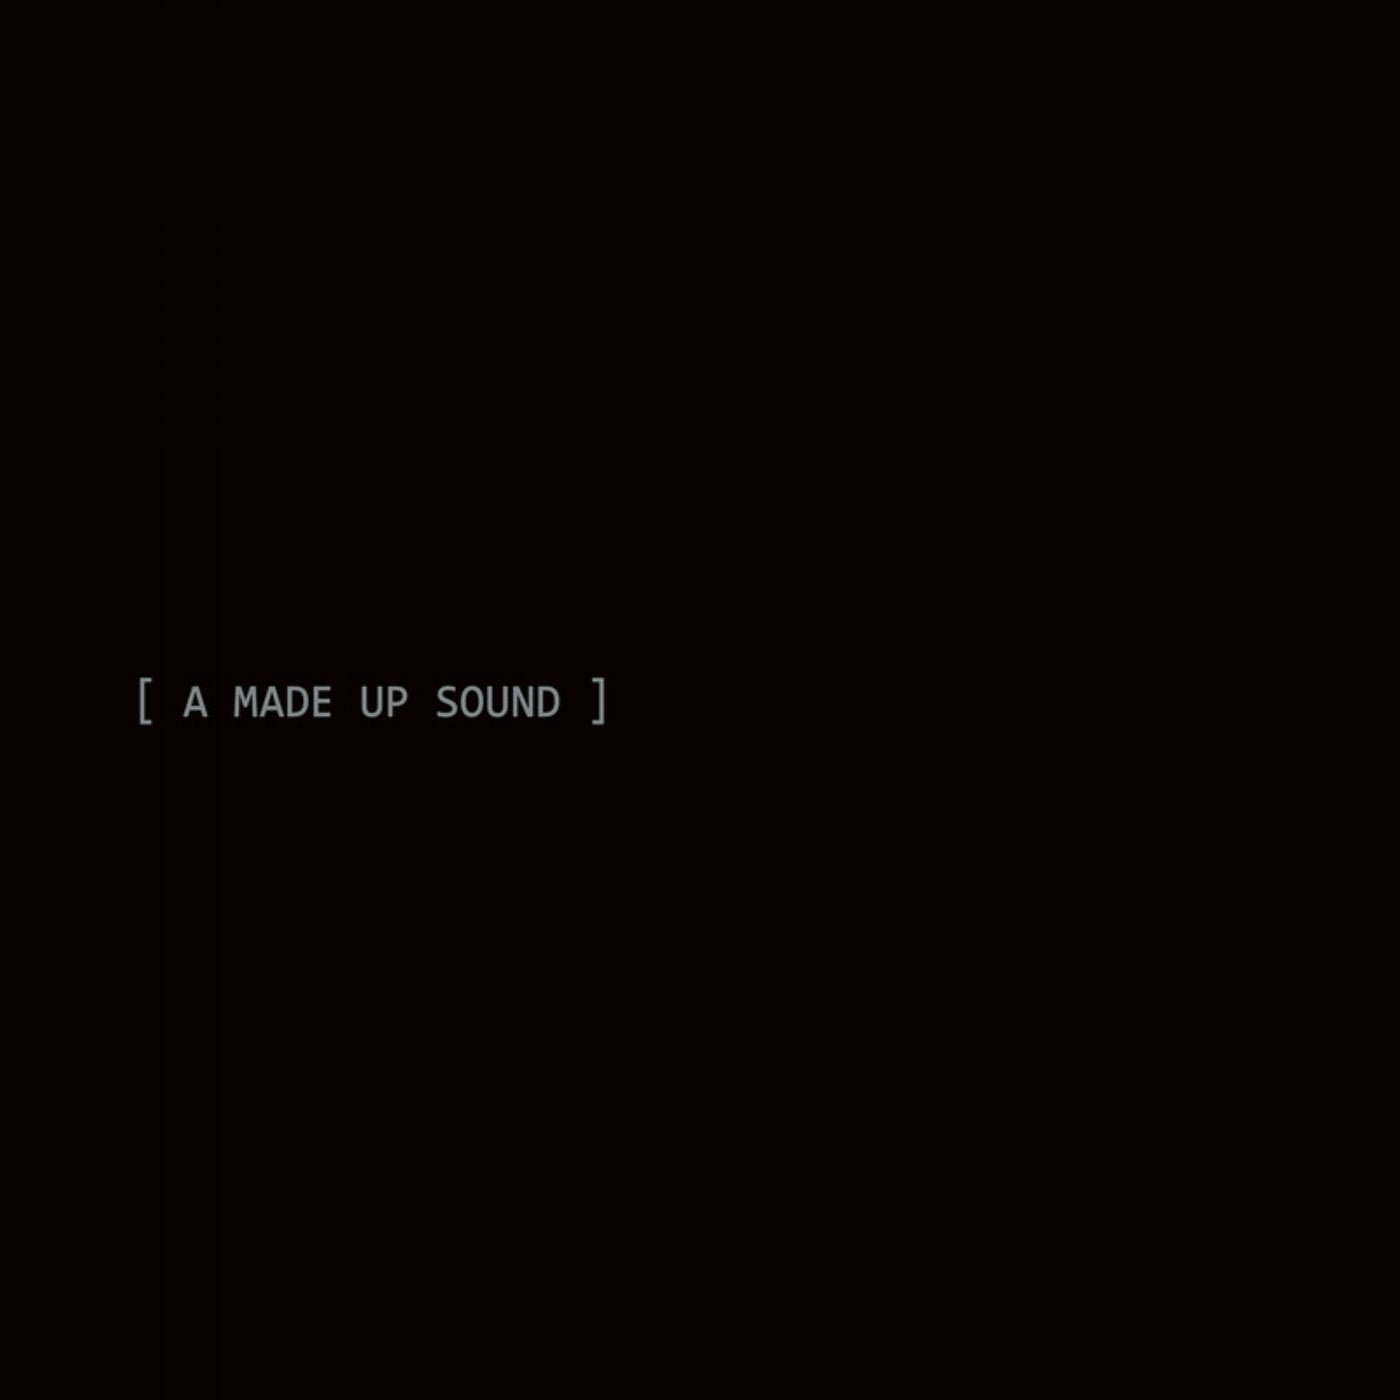 A Made Up Sound (2009-2016)